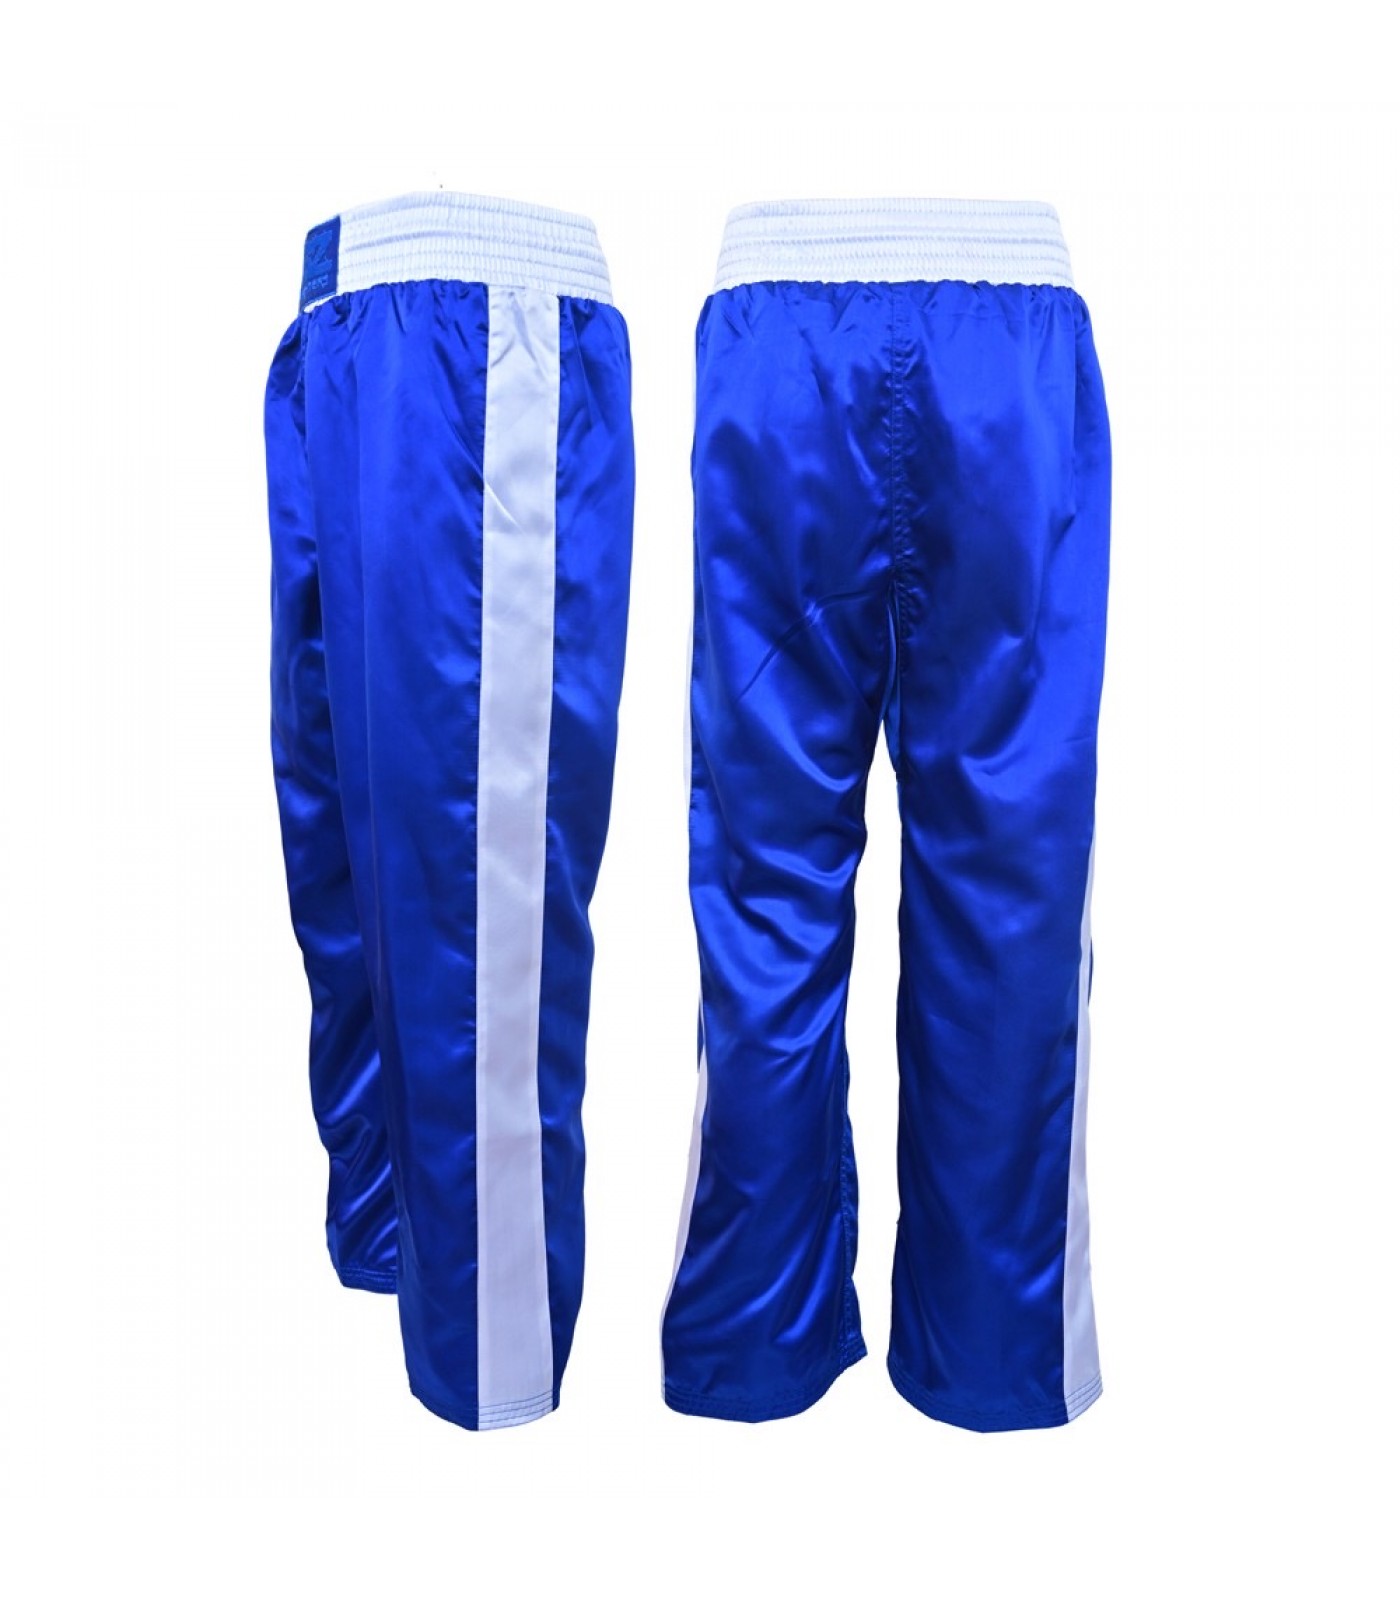 SZ Fighters - Панталон за кикбокс / Kick boxing pants Classic Blue